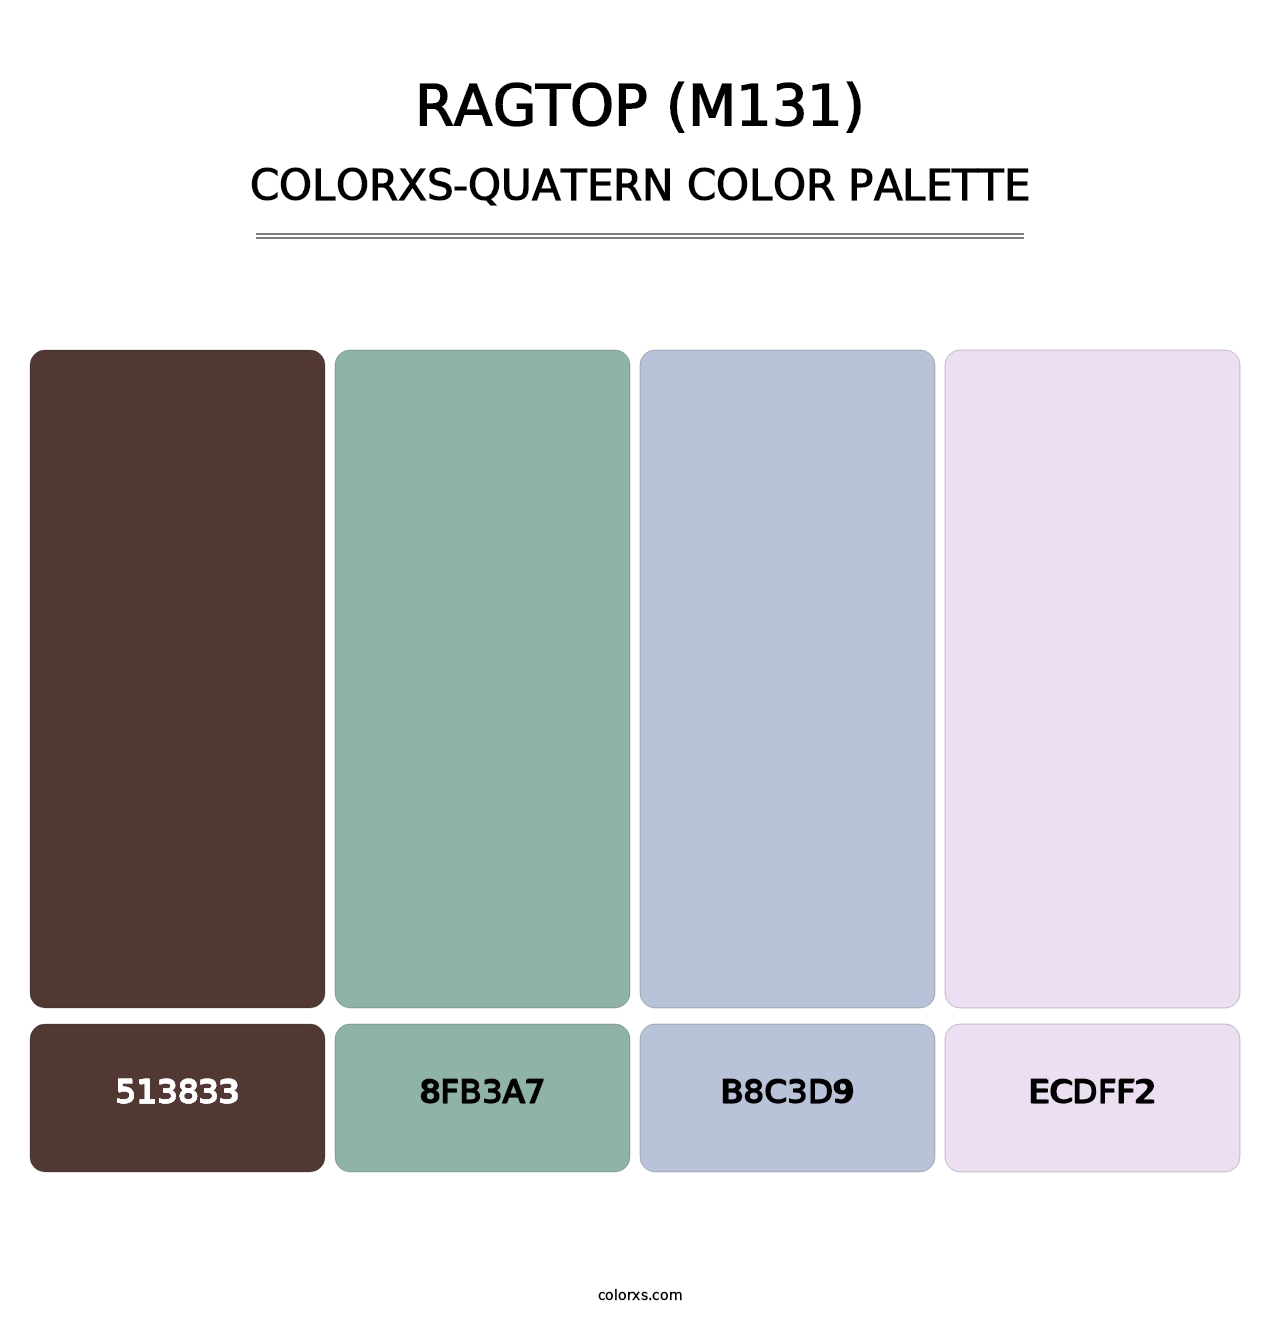 Ragtop (M131) - Colorxs Quatern Palette